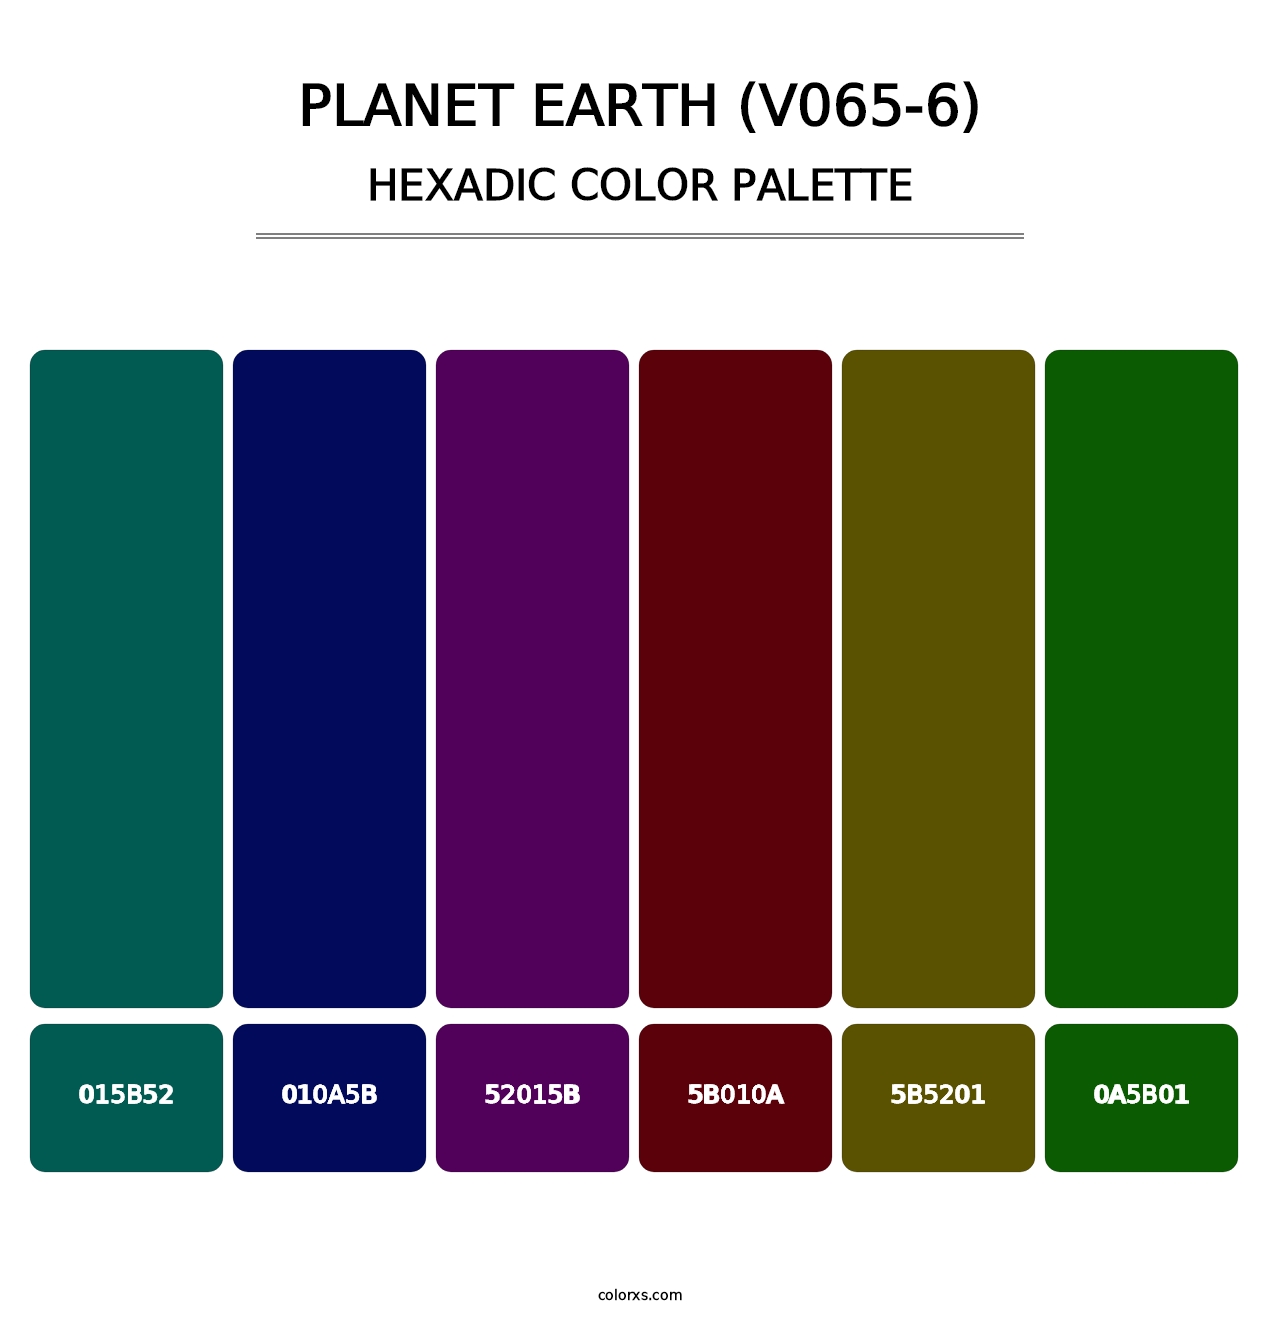 Planet Earth (V065-6) - Hexadic Color Palette